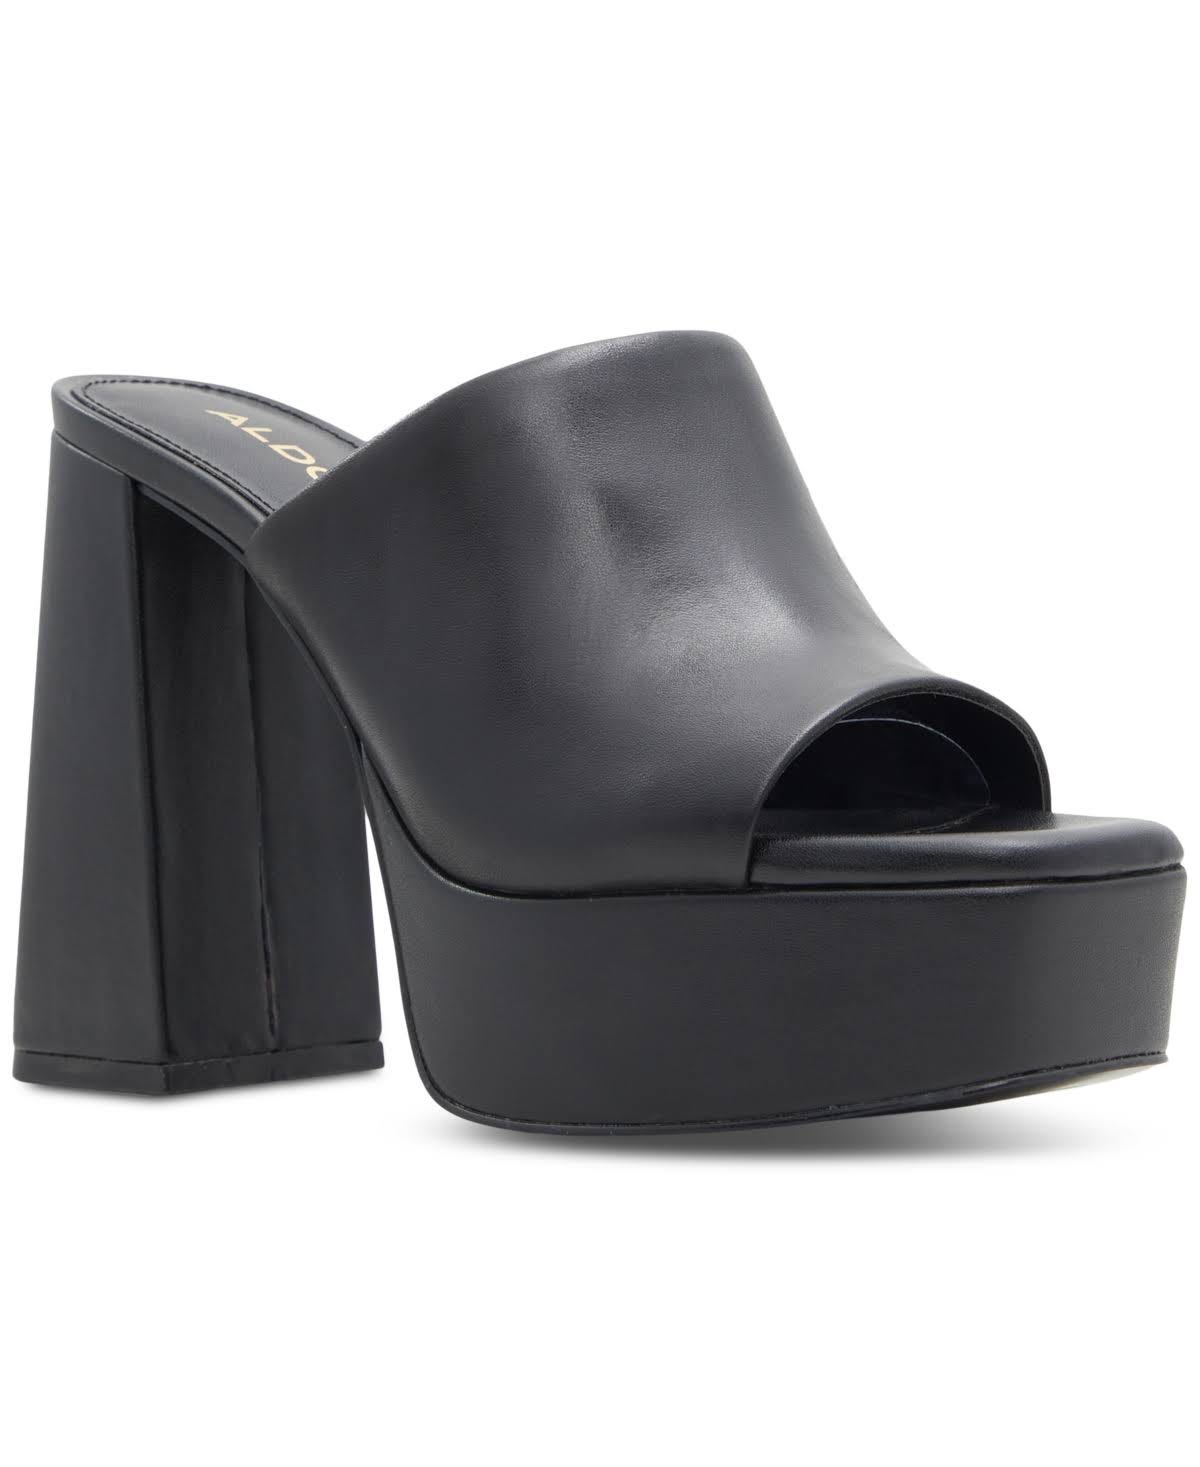 Elegant Black Platform Slides for Women | Image